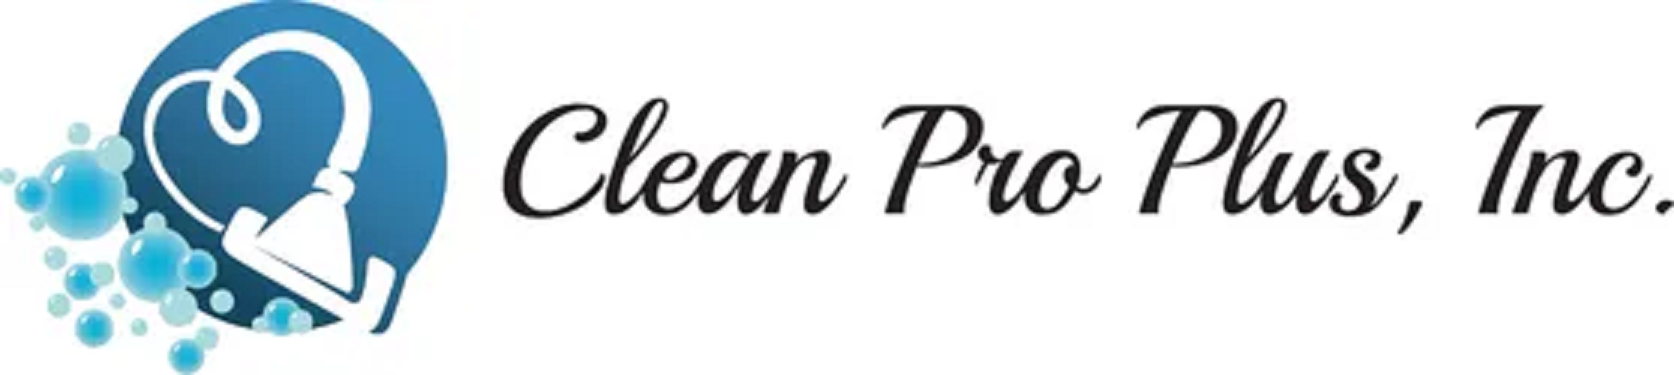 Clean Pro Plus, Inc. Logo